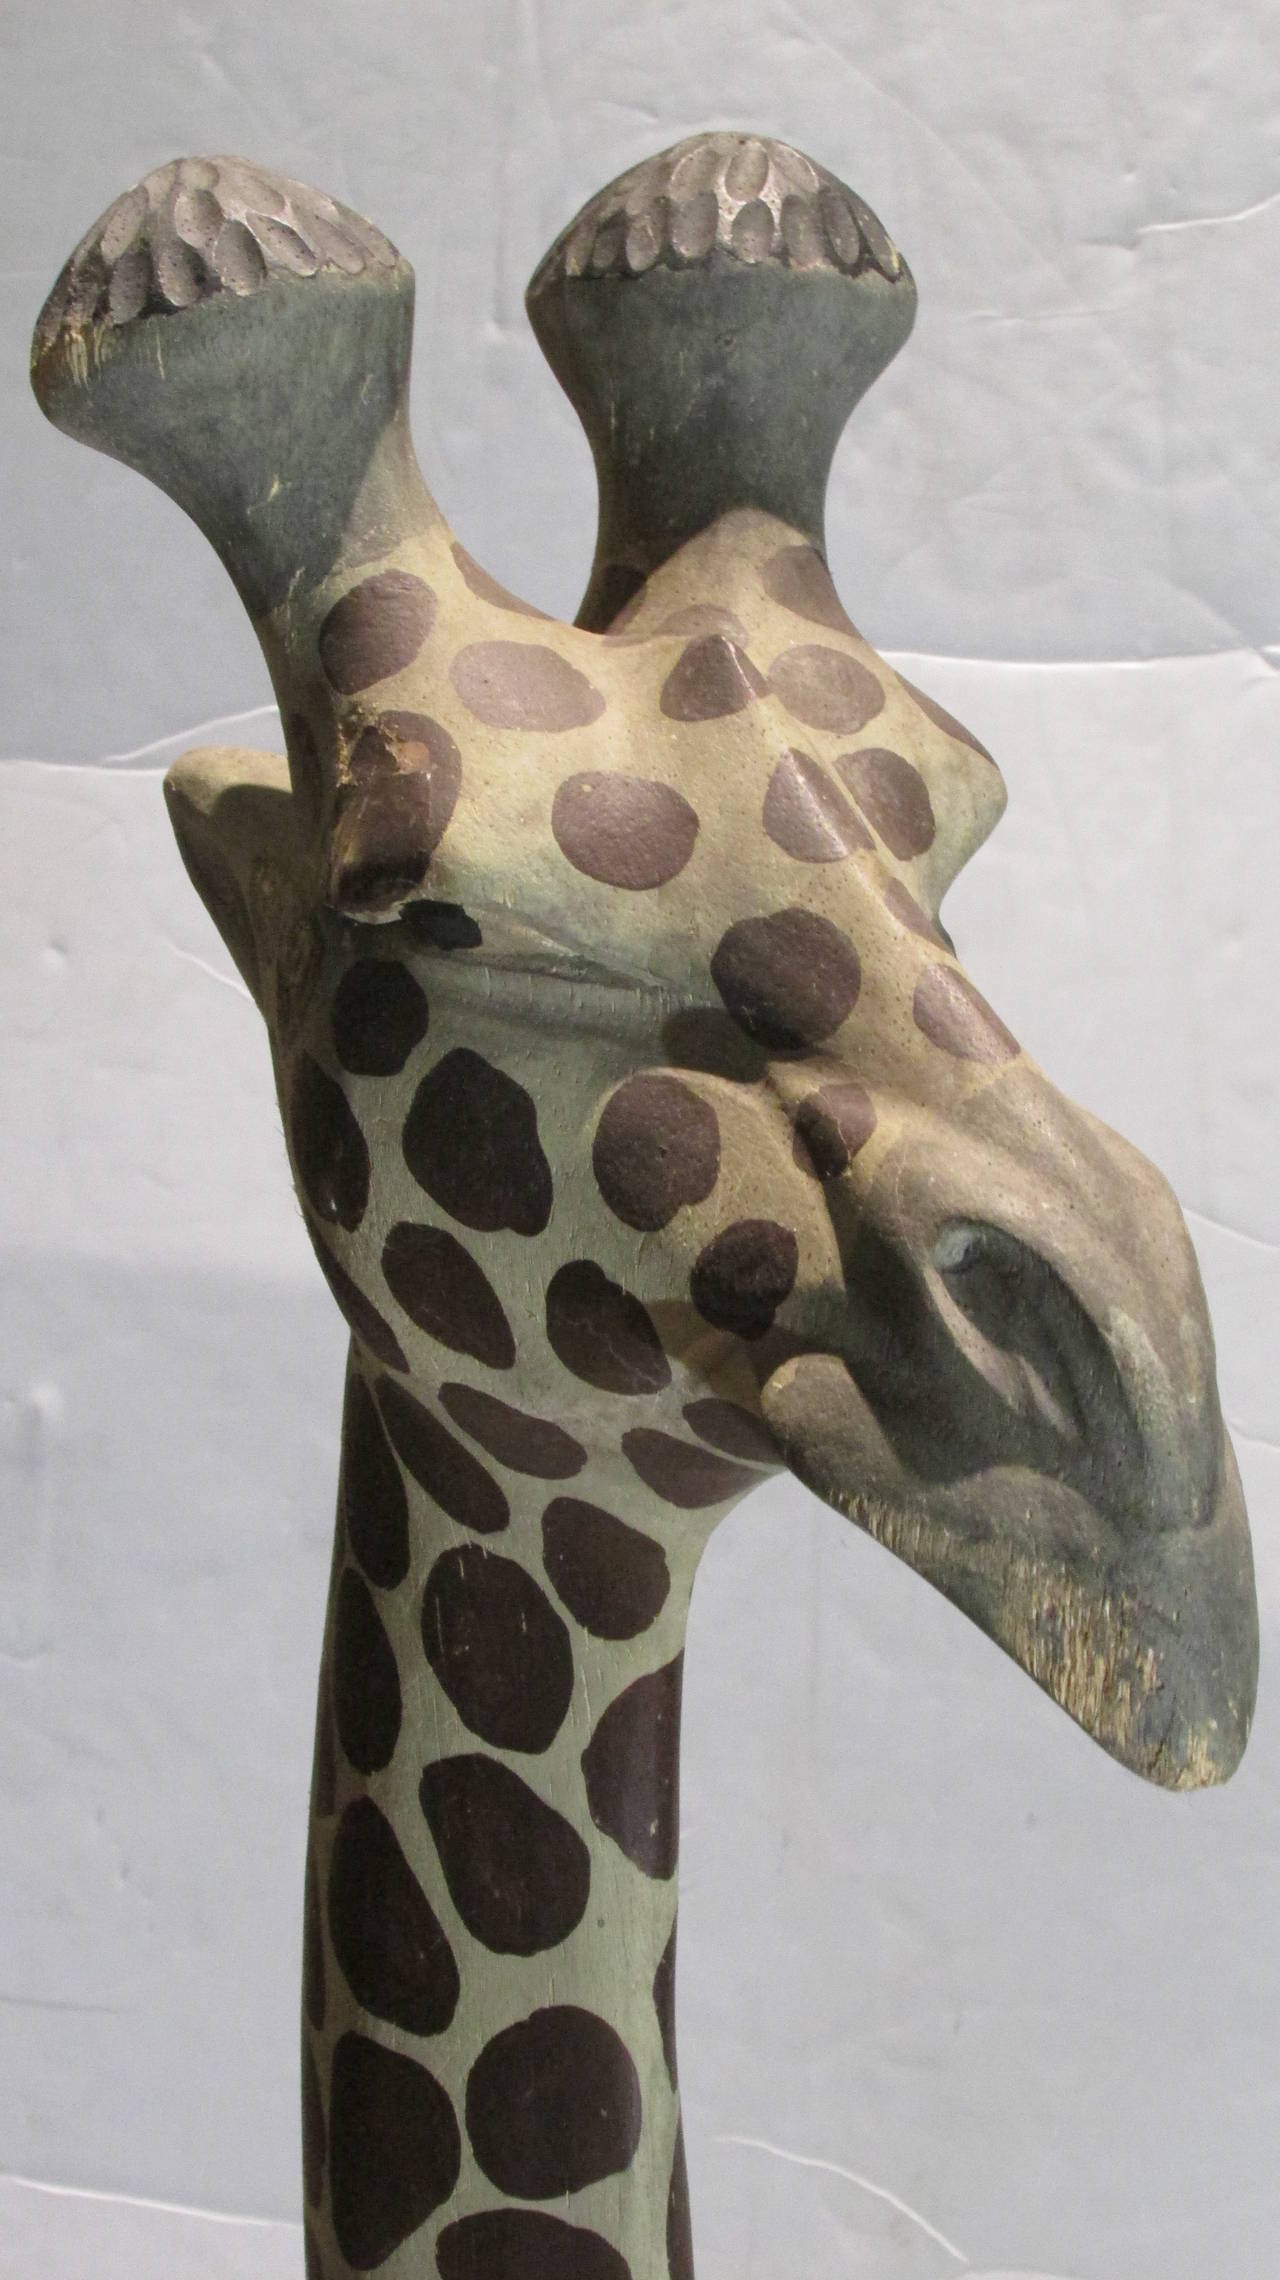 5 ft tall wooden giraffe